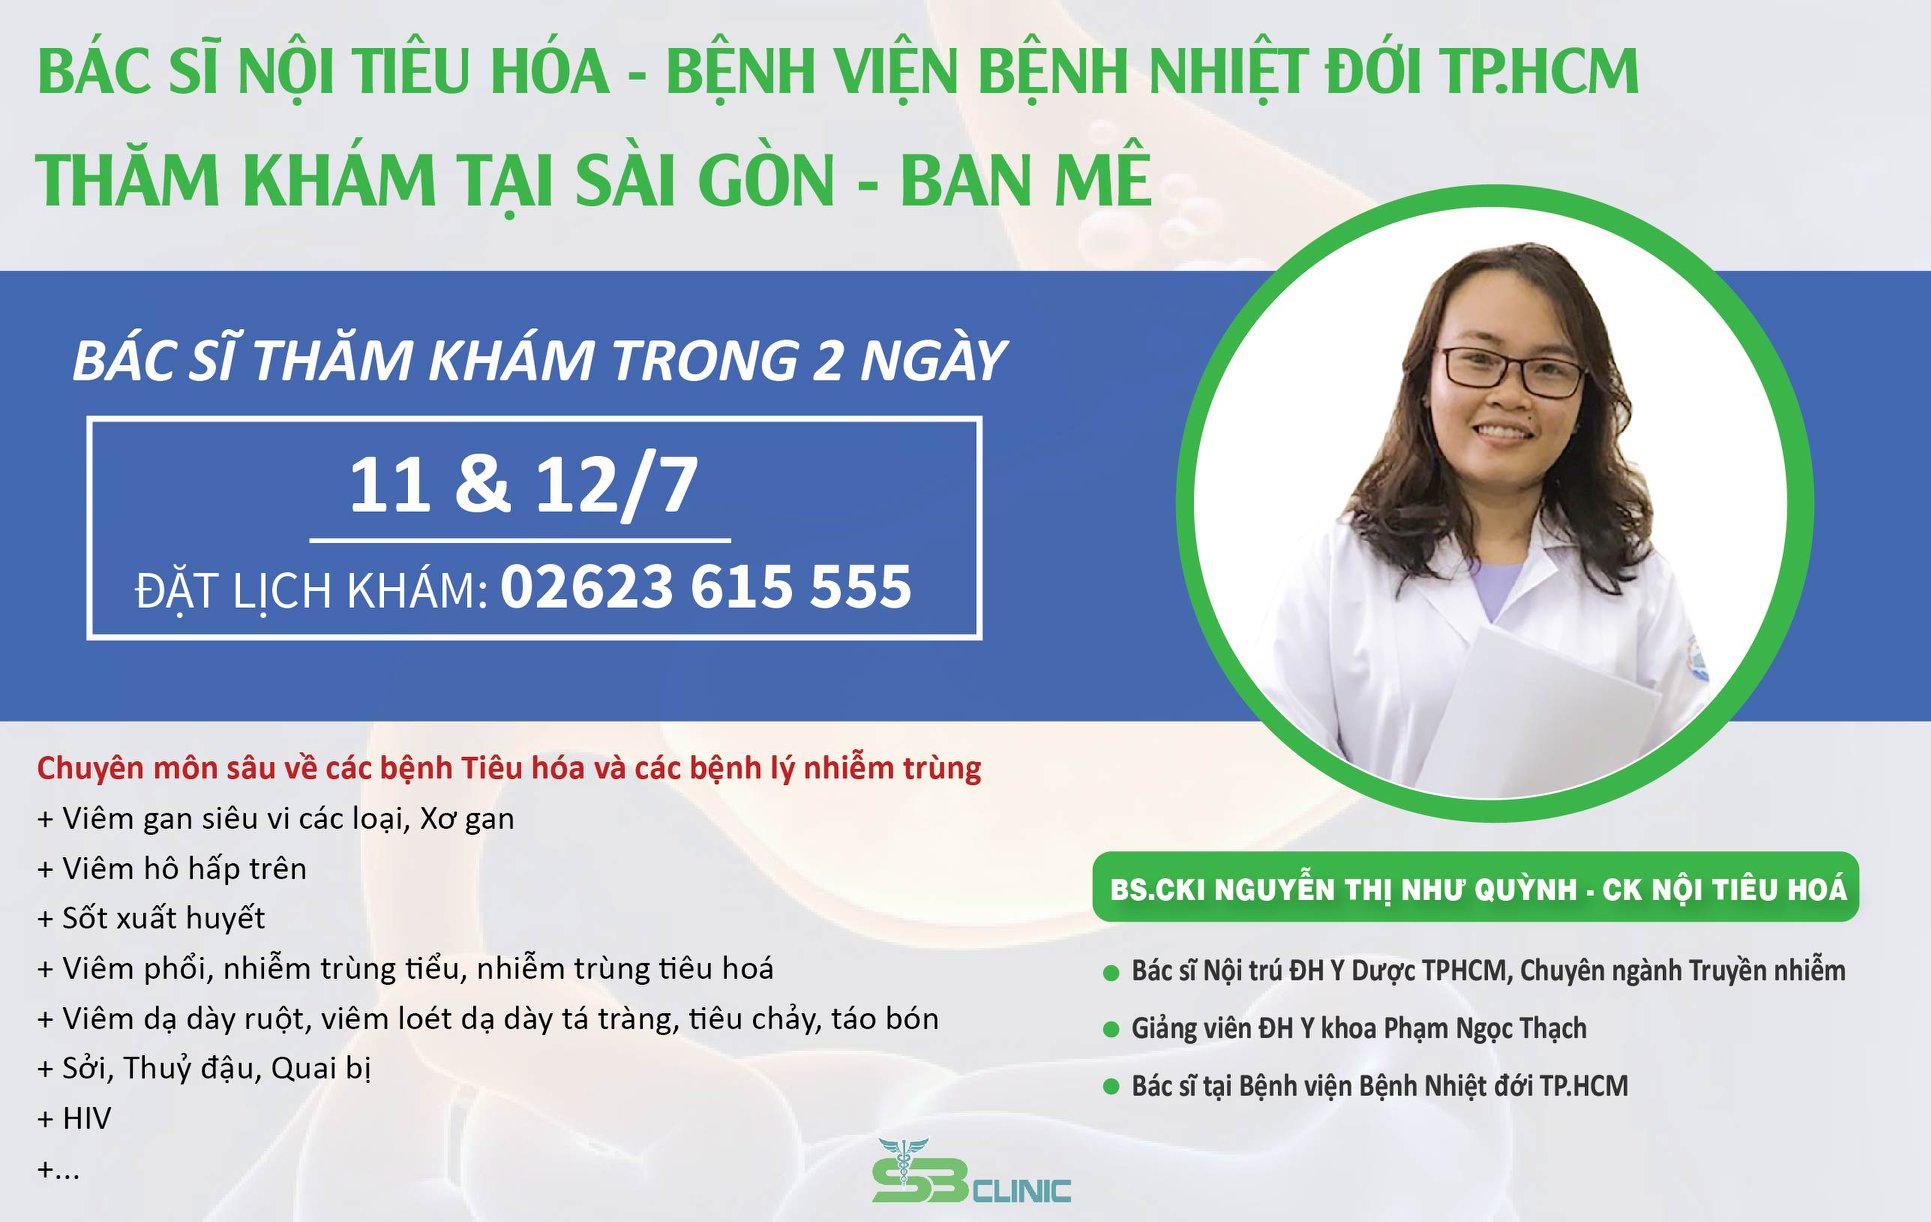 Bác sĩ Nội tiêu hóa - Bệnh viện Bệnh Nhiệt đới TP.HCM thăm khám tại Sài Gòn - Ban Mê